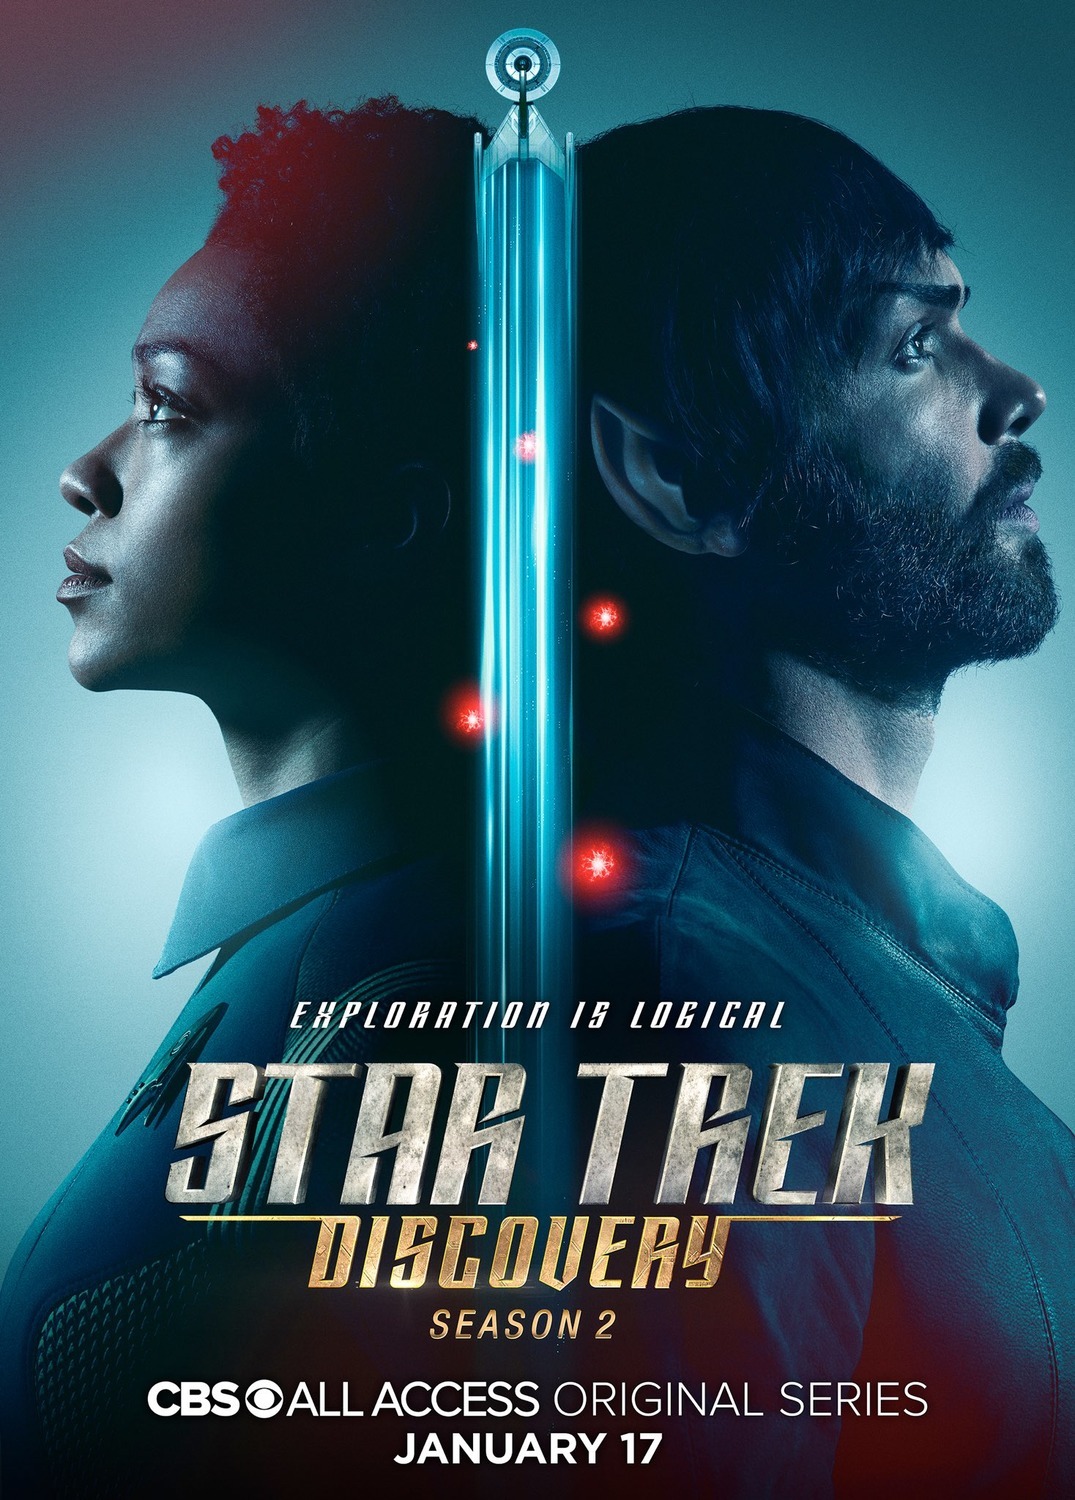 ดูหนังออนไลน์ Star Trek Discovery Season 2 EP.5 สตาร์ เทรค ดิสคัฟเวอรี่ ซีซั่นที่ 2 ตอนที่ 5